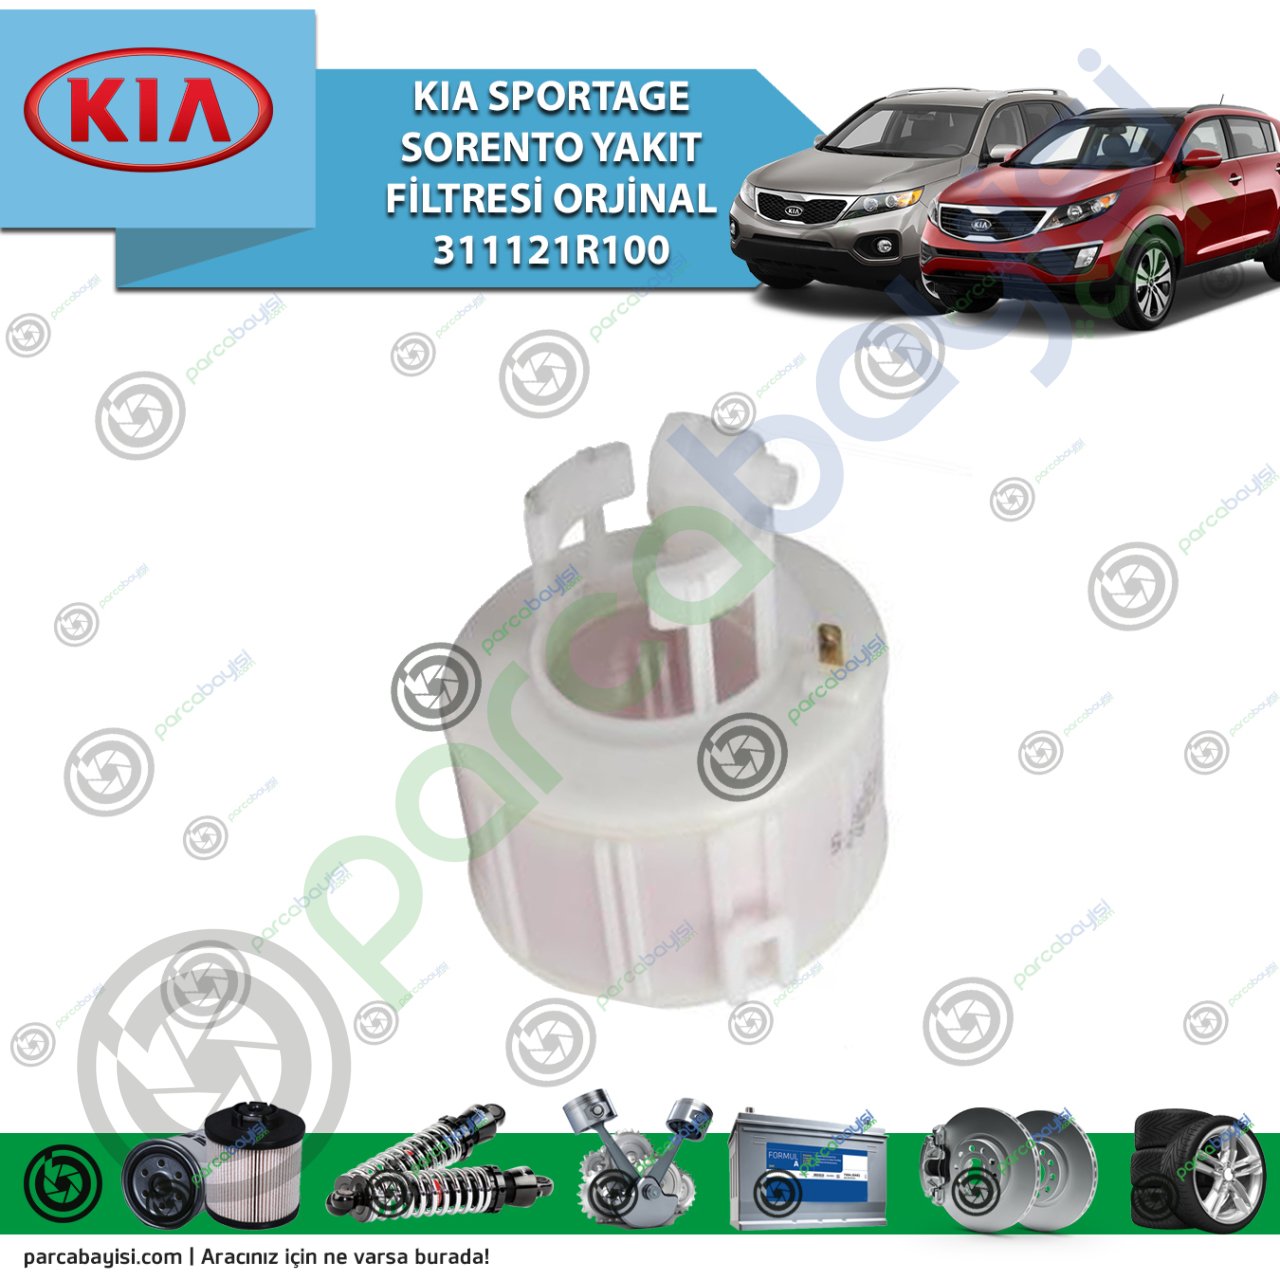 Kia Sportage Sorento Yakıt Filtresi Orjinal 311121R100